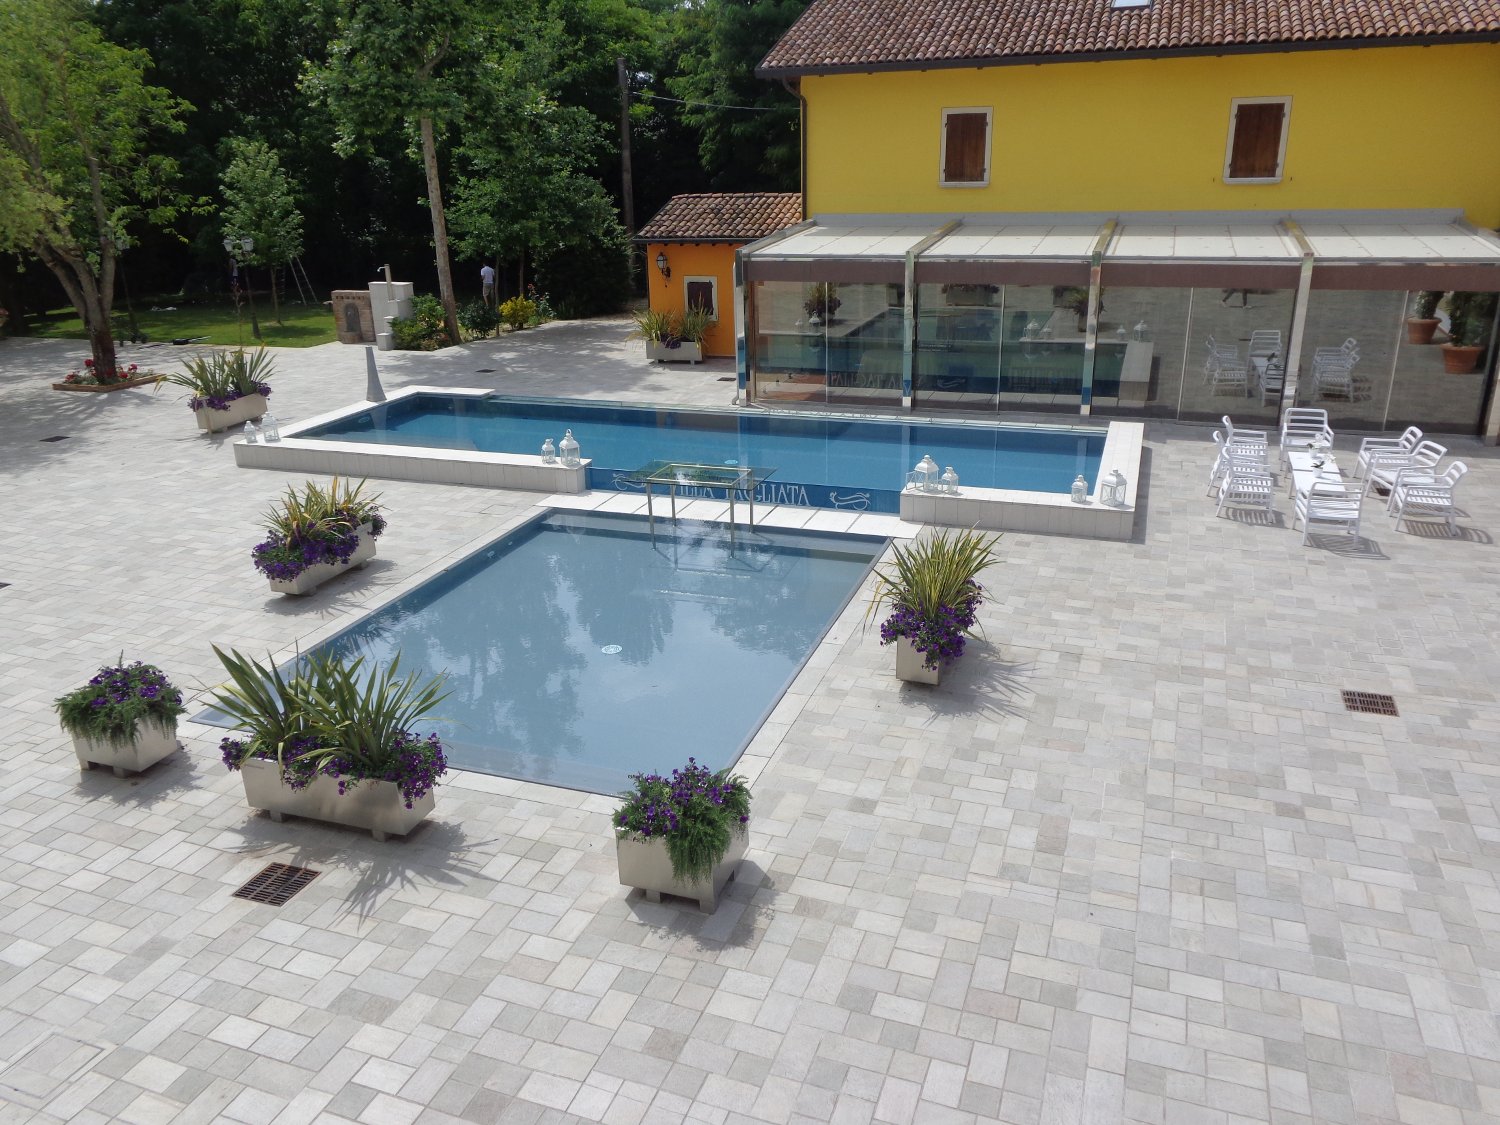 Panoramica piscina a sfioro con ampia zona relax realizzata completamente su misura